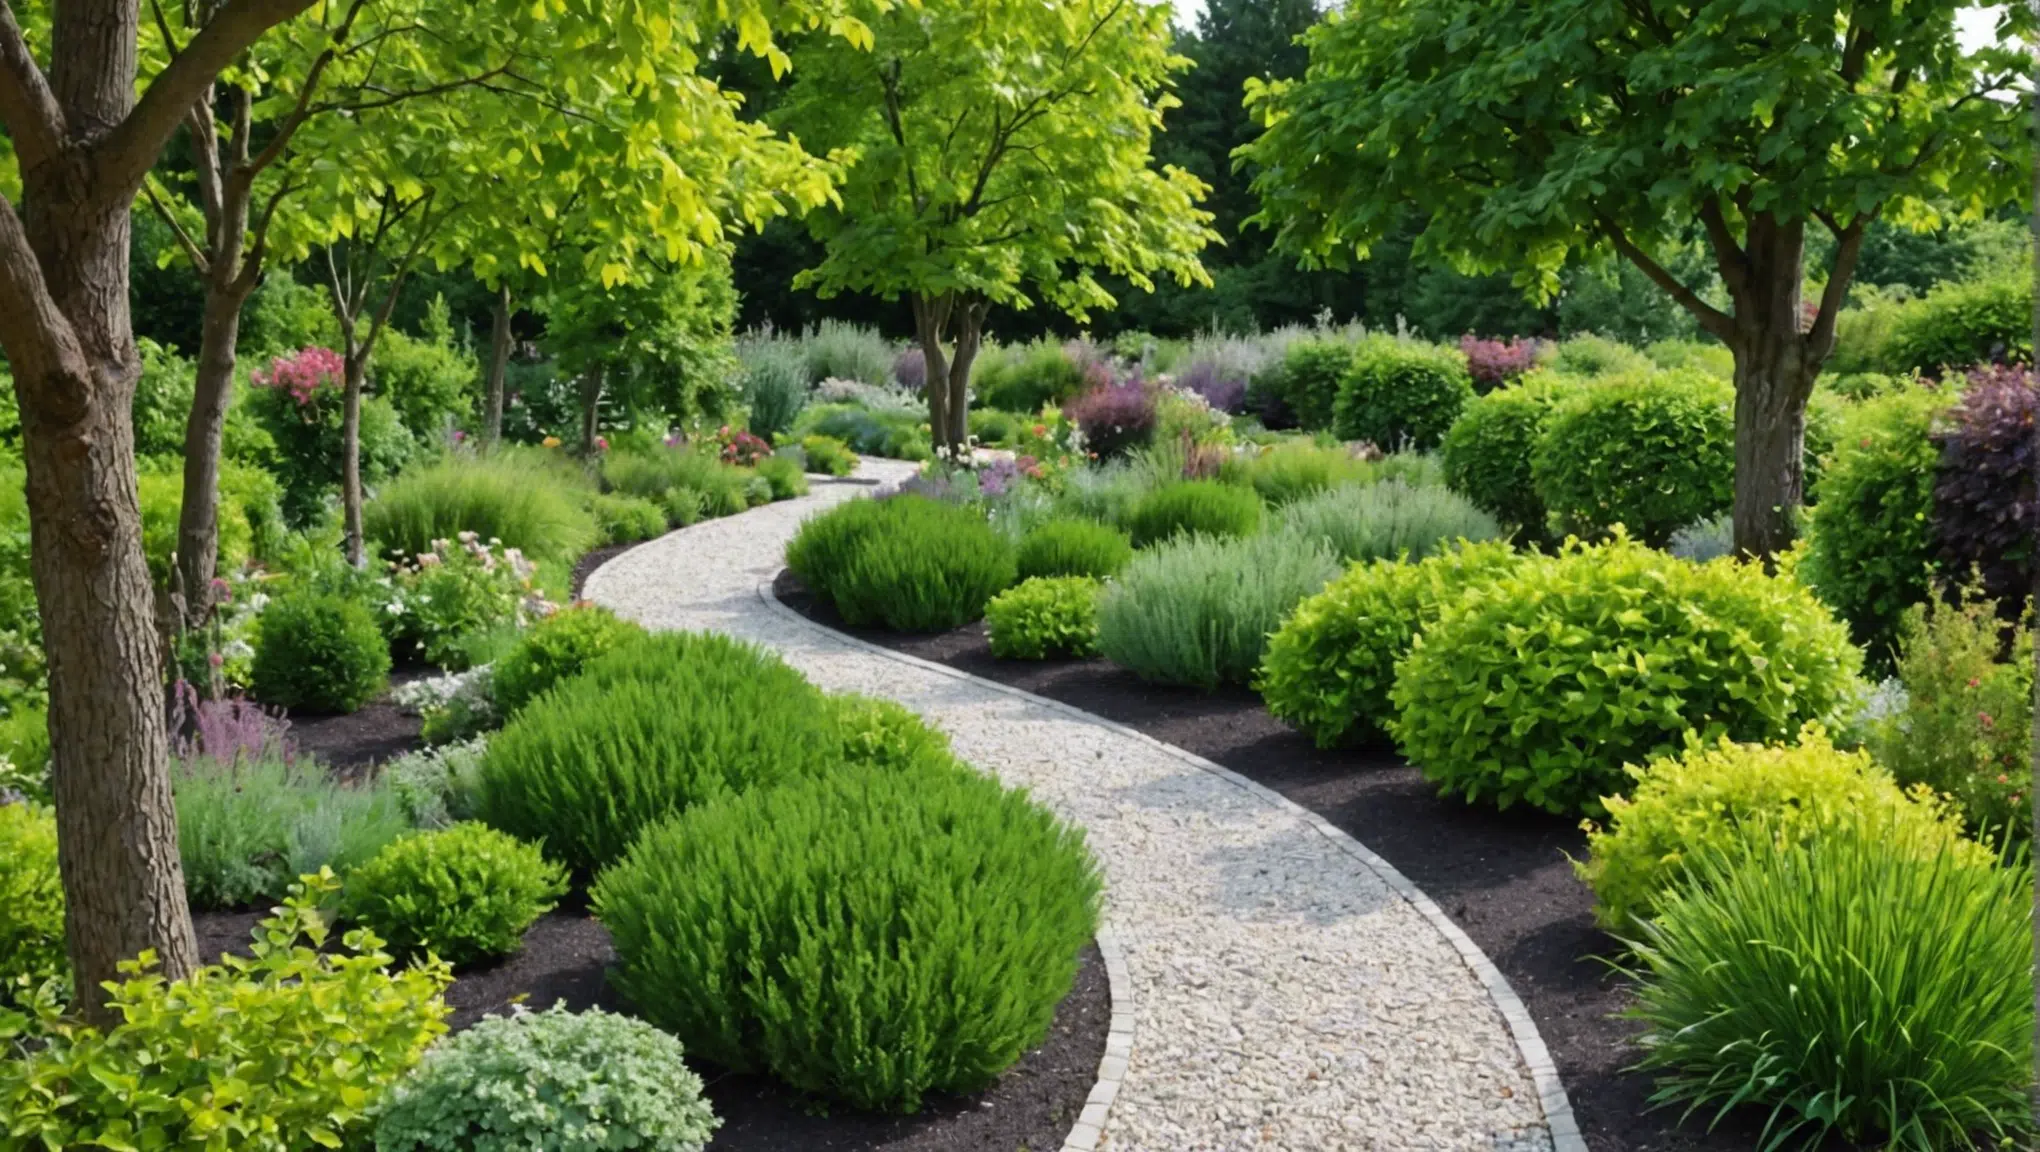 découvrez les meilleures astuces pour aménager votre jardin avec trestresnadia.fr. profitez de conseils pratiques et inspirants pour transformer votre espace extérieur.